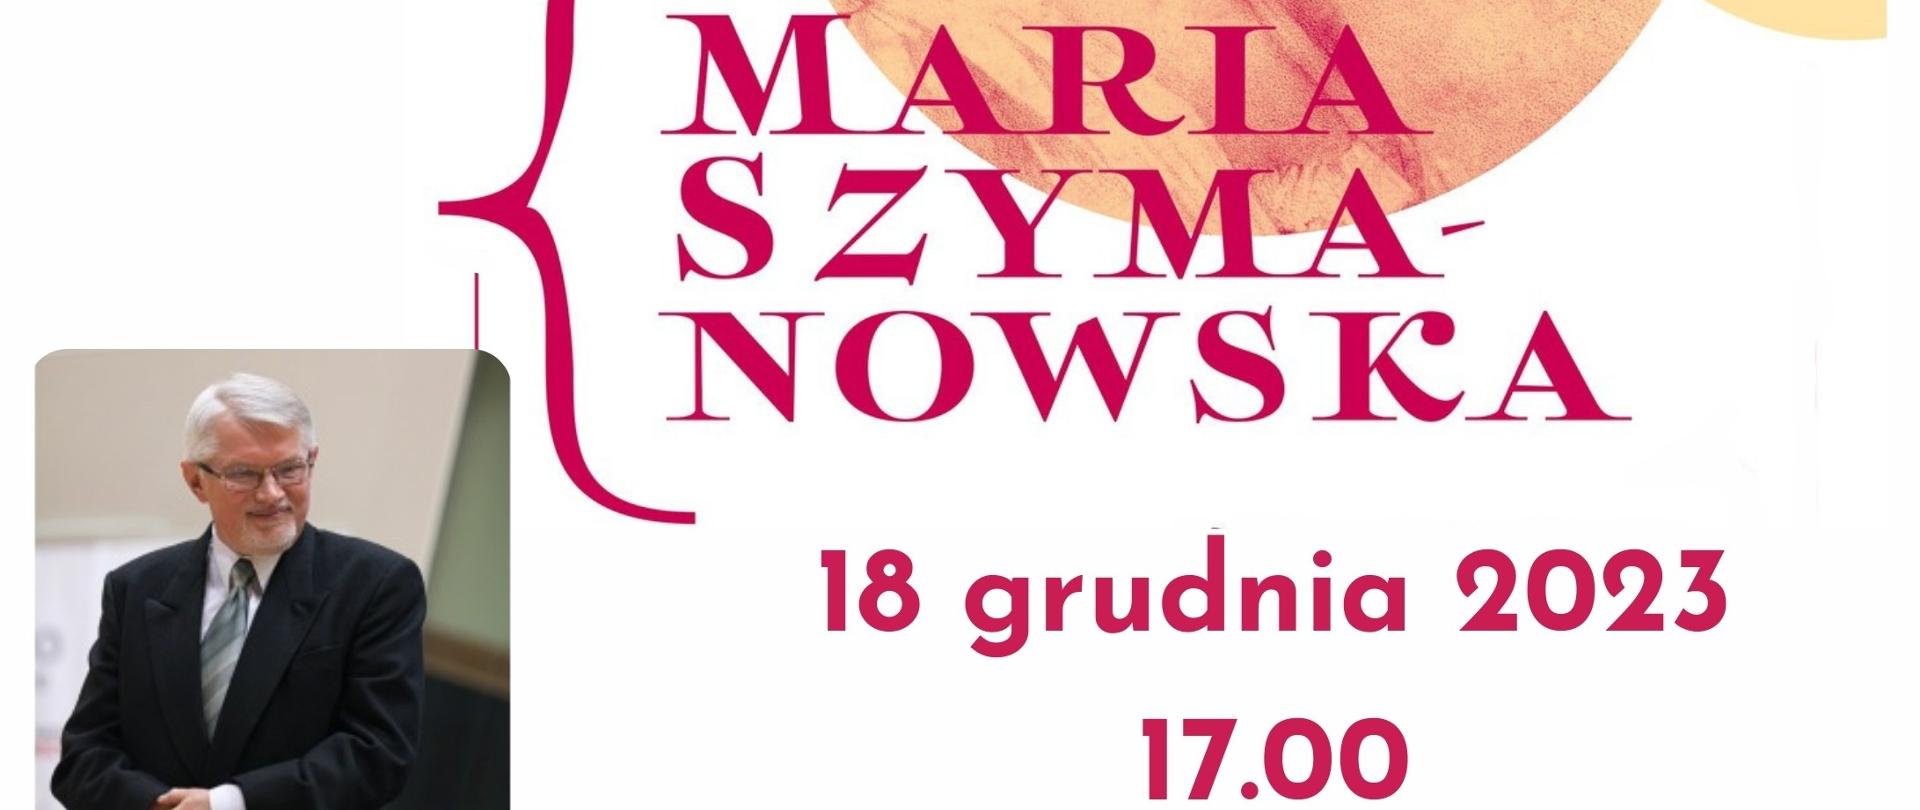 Plakat informujący o koncercie w rocznicę urodzin Marii Szymanowskiej w wykonaniu prof. Tadeusza Trzaskalika, na białym tle napisy w kolorze ciemnoczerwonym, pośrodku portret Marii Szymanowskiej, na dole po lewej zdjęcie wykonawcy